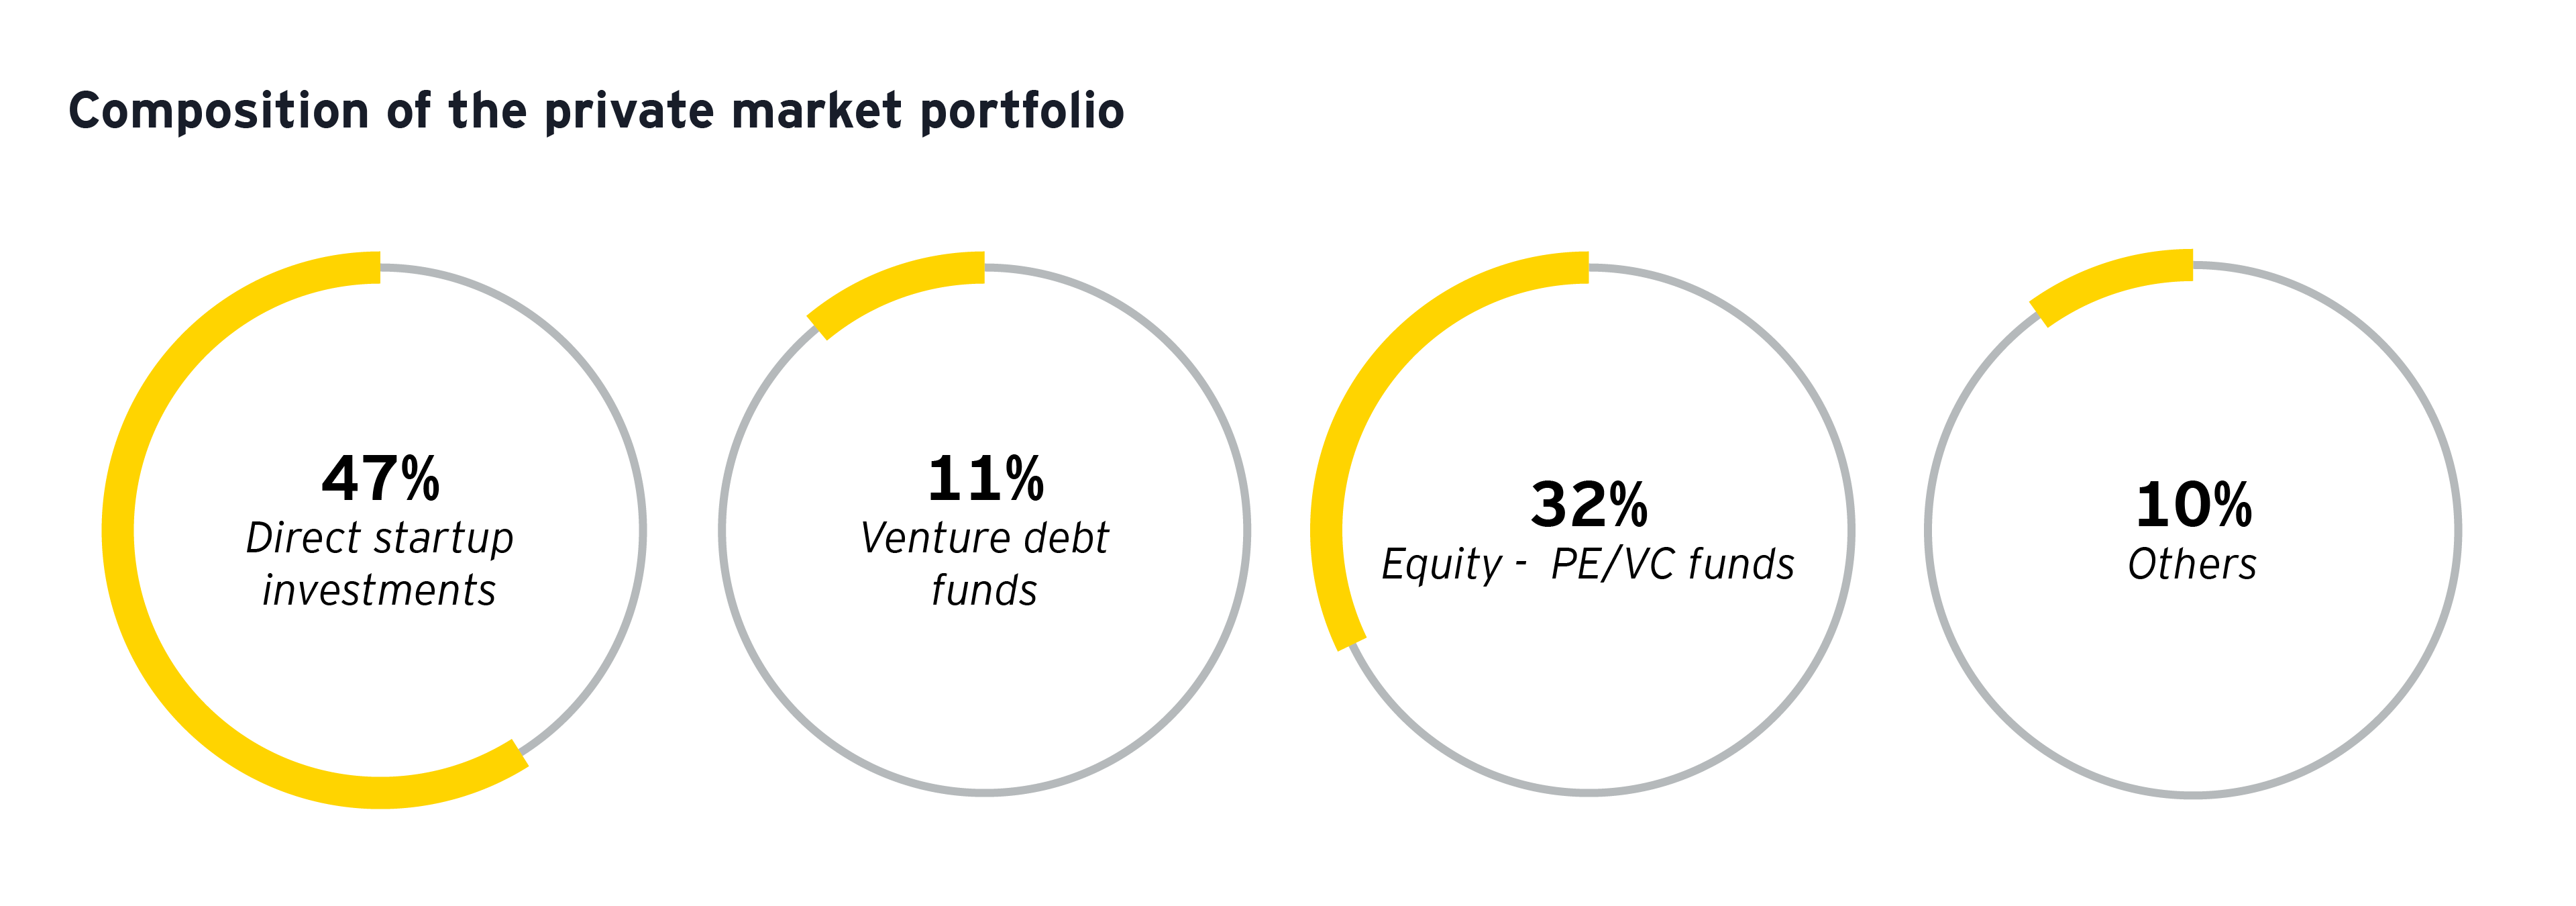 Composition of private market portfolio